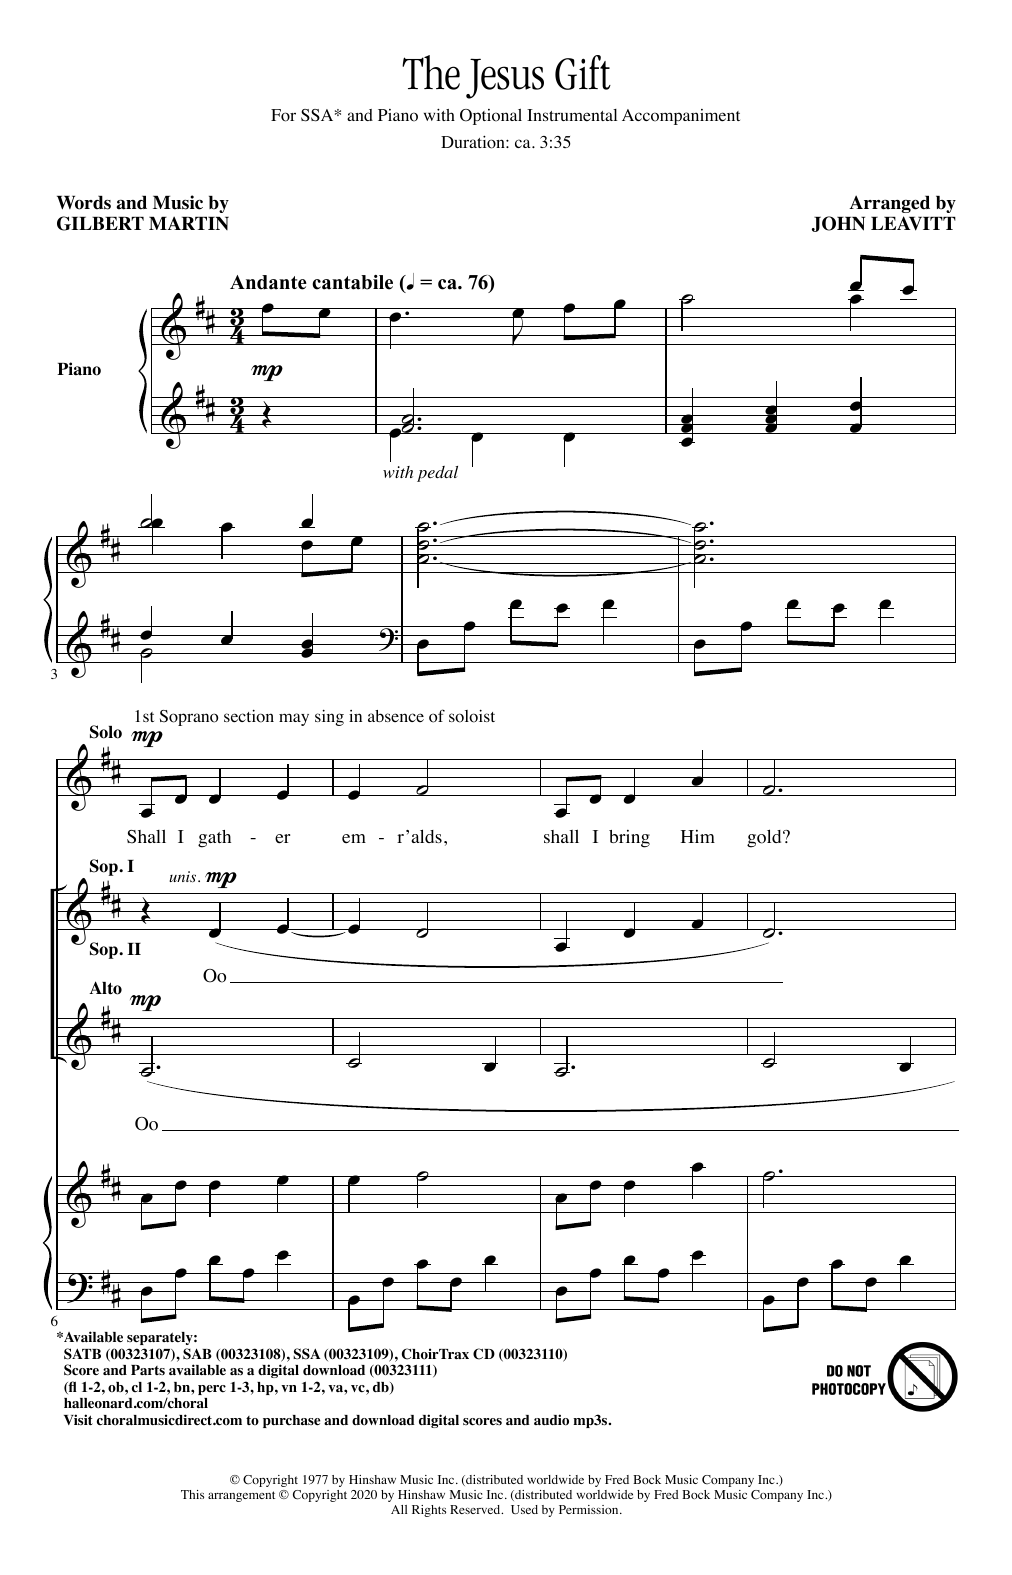 Gilbert Martin The Jesus Gift (arr. John Leavitt) Sheet Music Notes & Chords for SSA Choir - Download or Print PDF